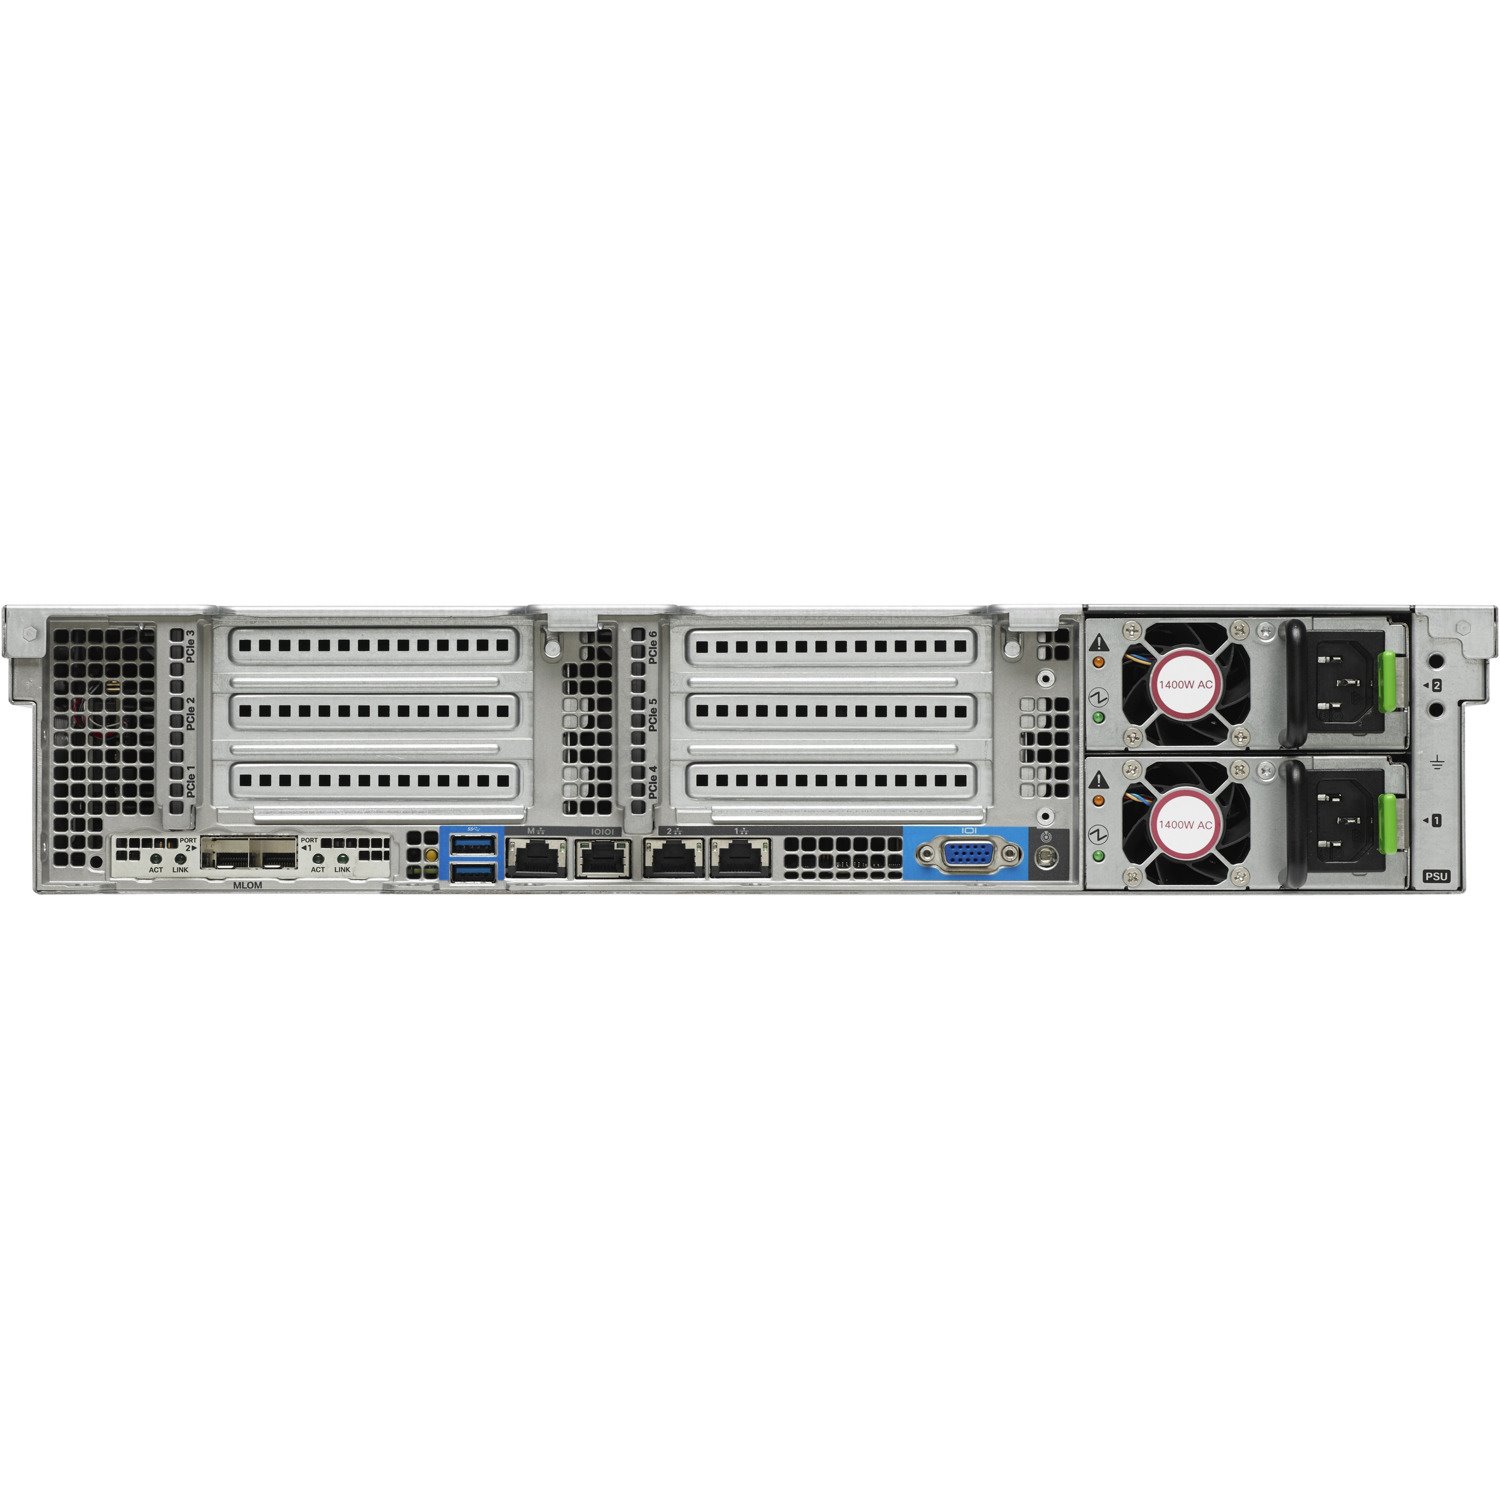 Cisco C240 M4 2U Rack Server - 2 x Intel Xeon E5-2643 v3 3.40 GHz - 256 GB RAM - 12Gb/s SAS, Serial ATA Controller